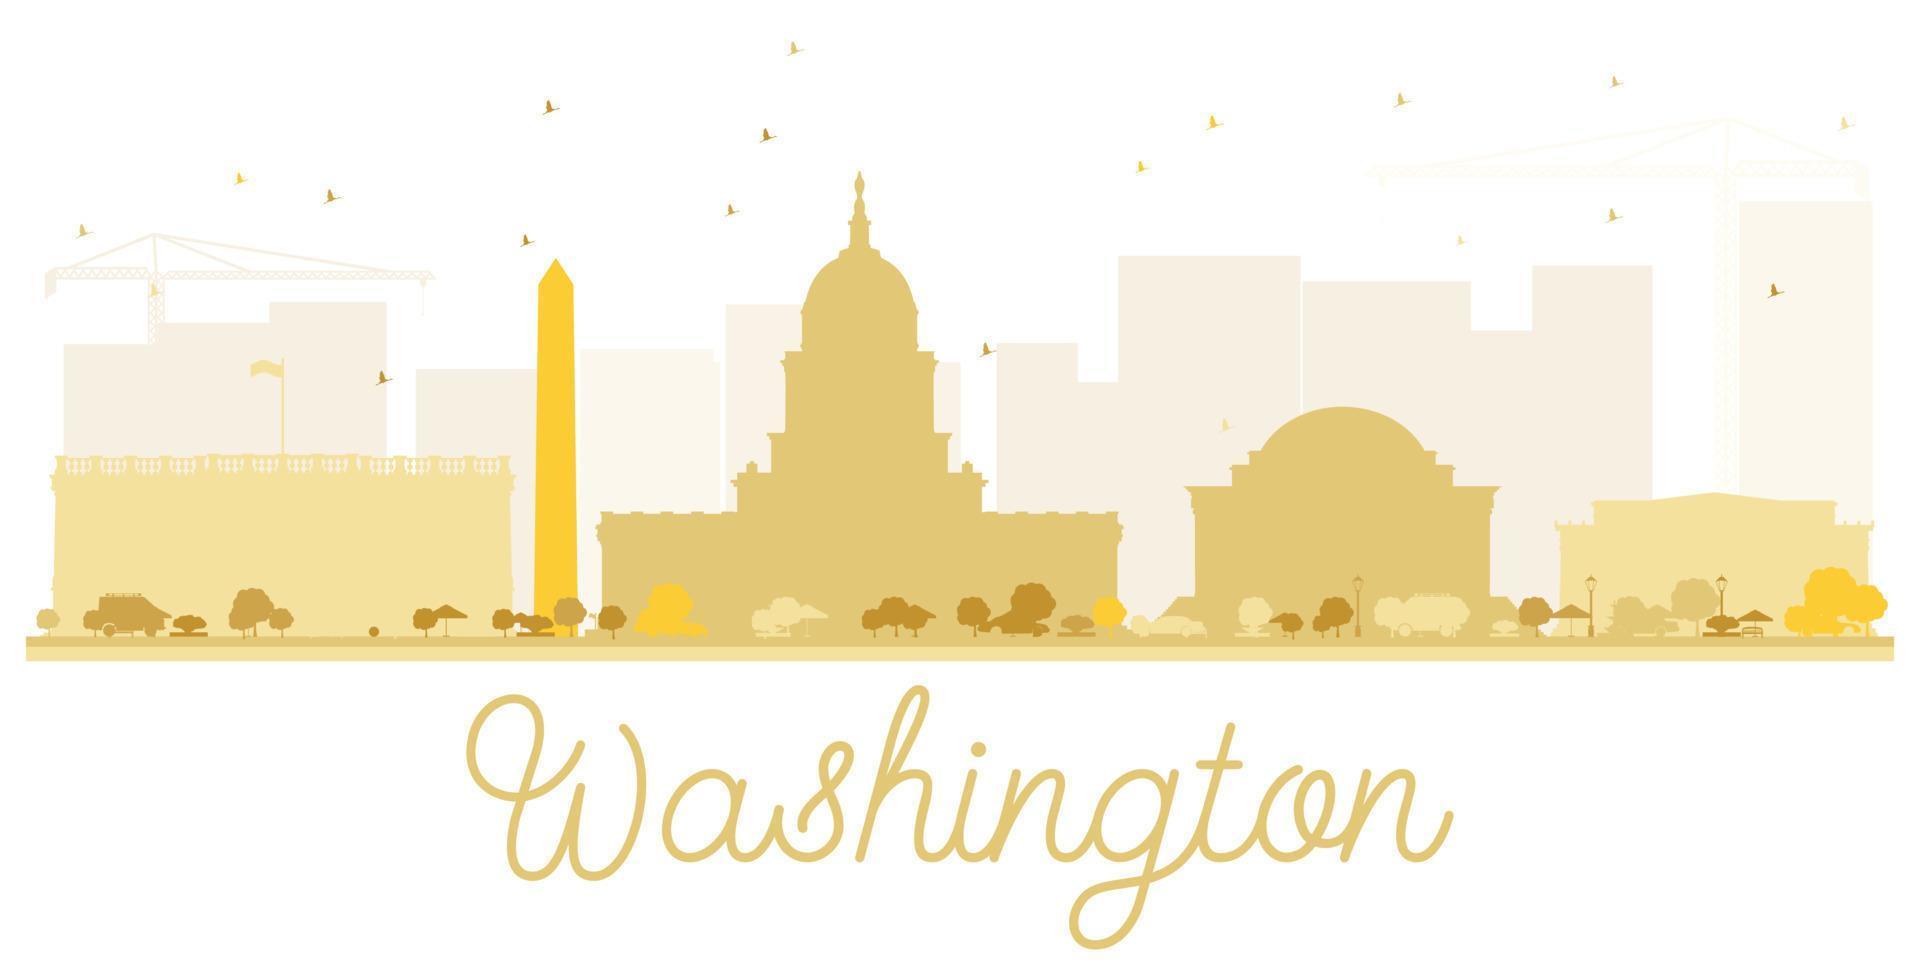 silhueta dourada do horizonte da cidade de Washington DC. vetor